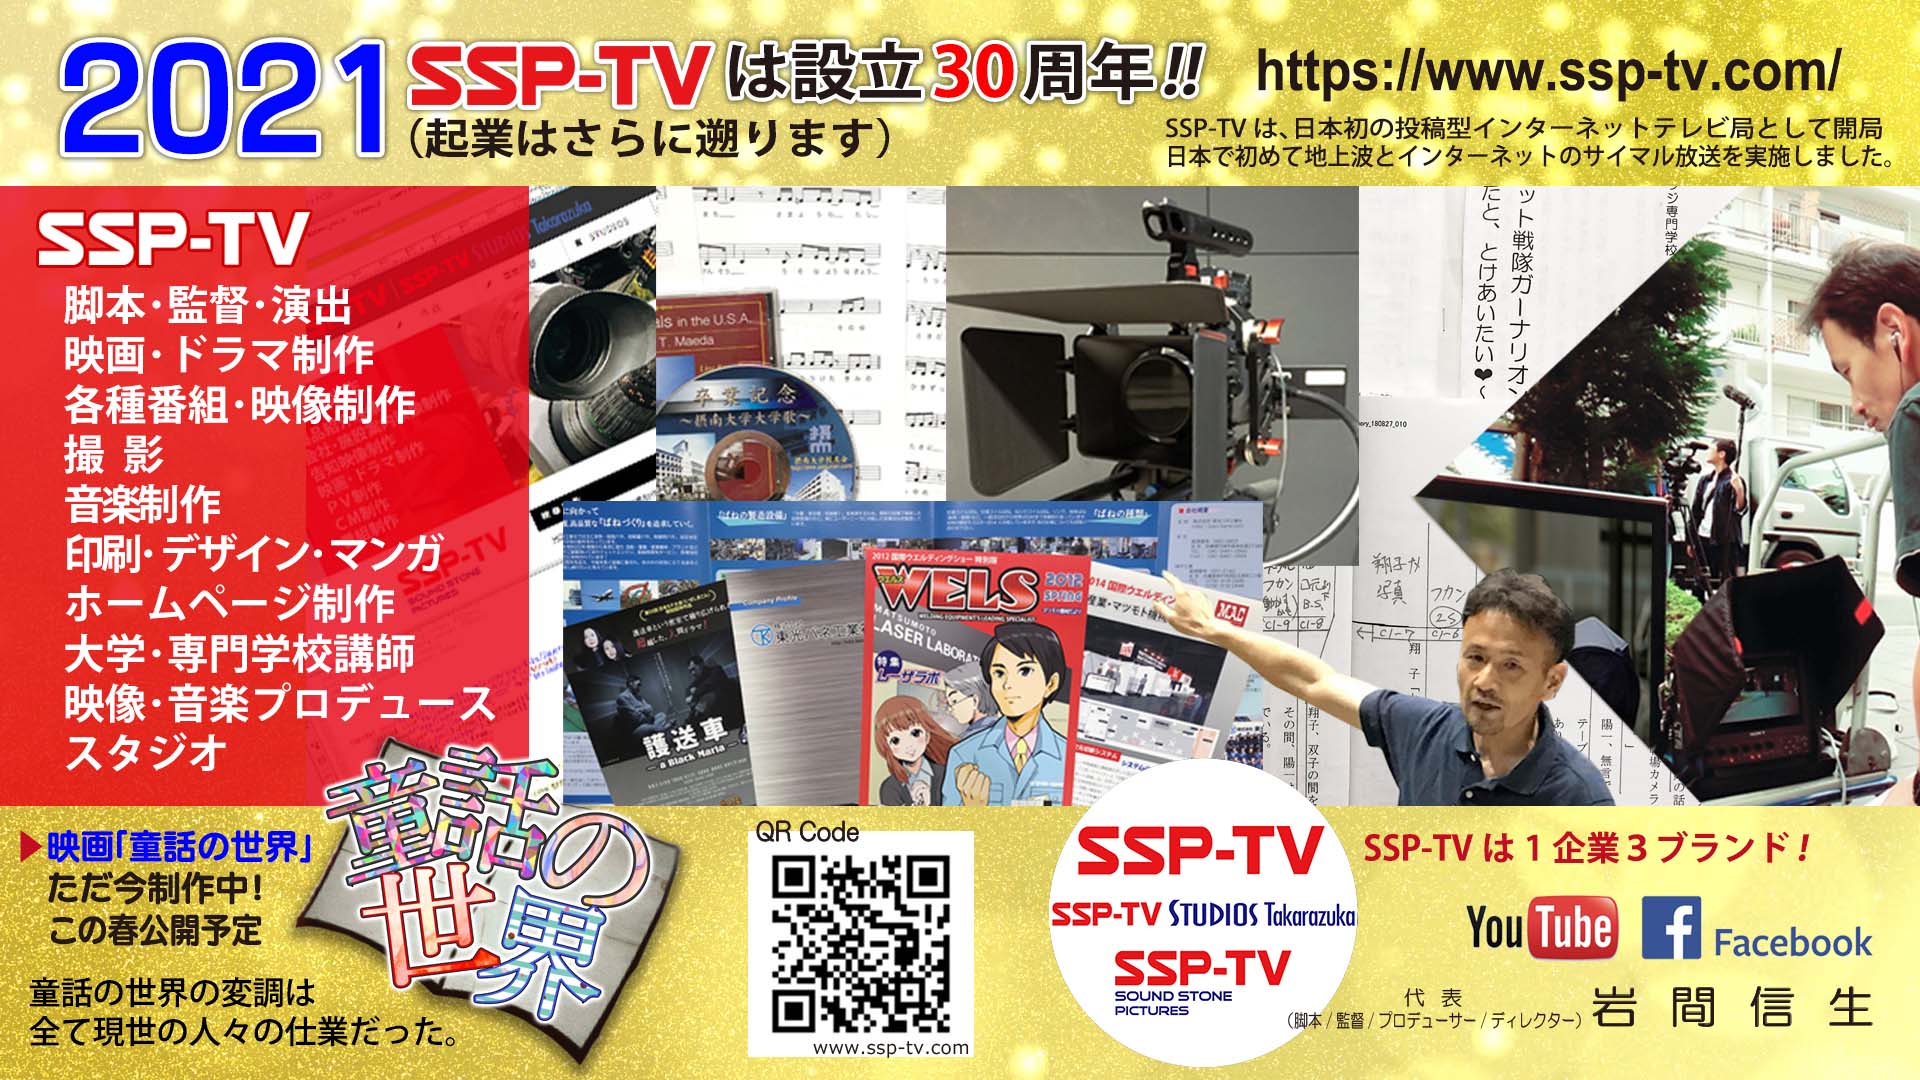 2021年 SSP-TV は設立30周年!!